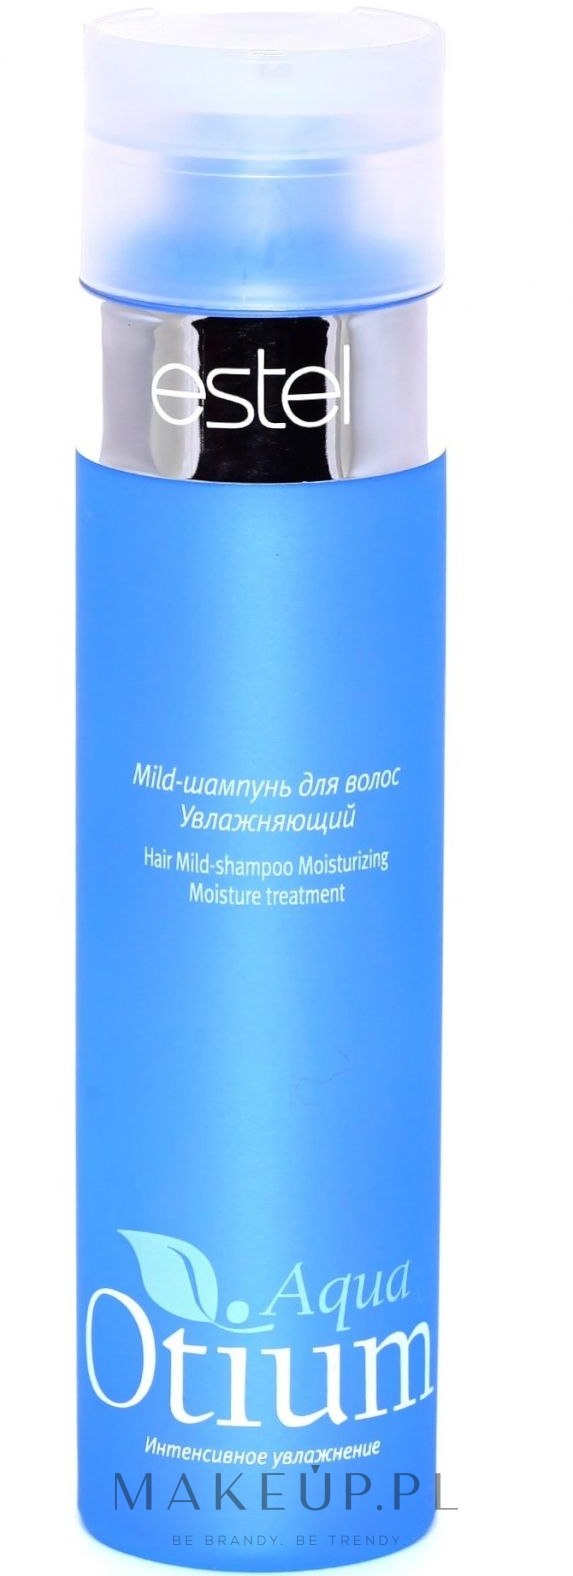 estel otium aqua szampon nawilżający